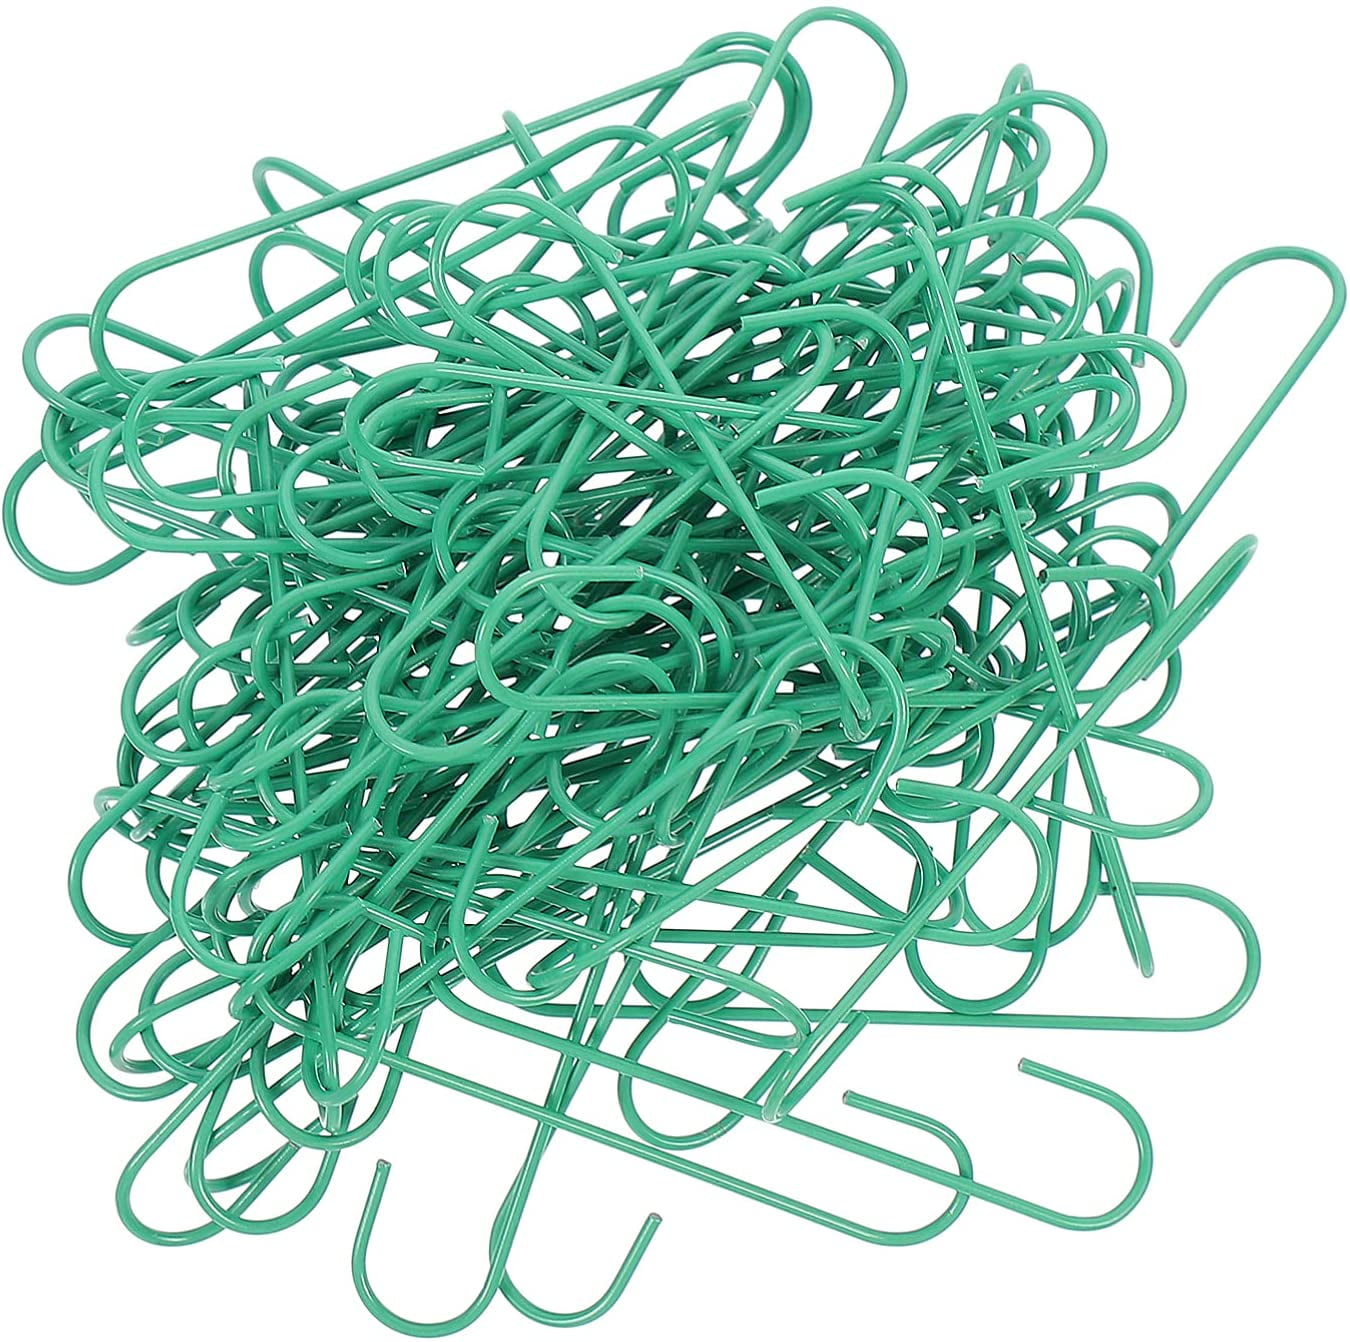 100 Green Coated Wire Ornament Hanger Hooks 1 3/8 by Kurt Adler